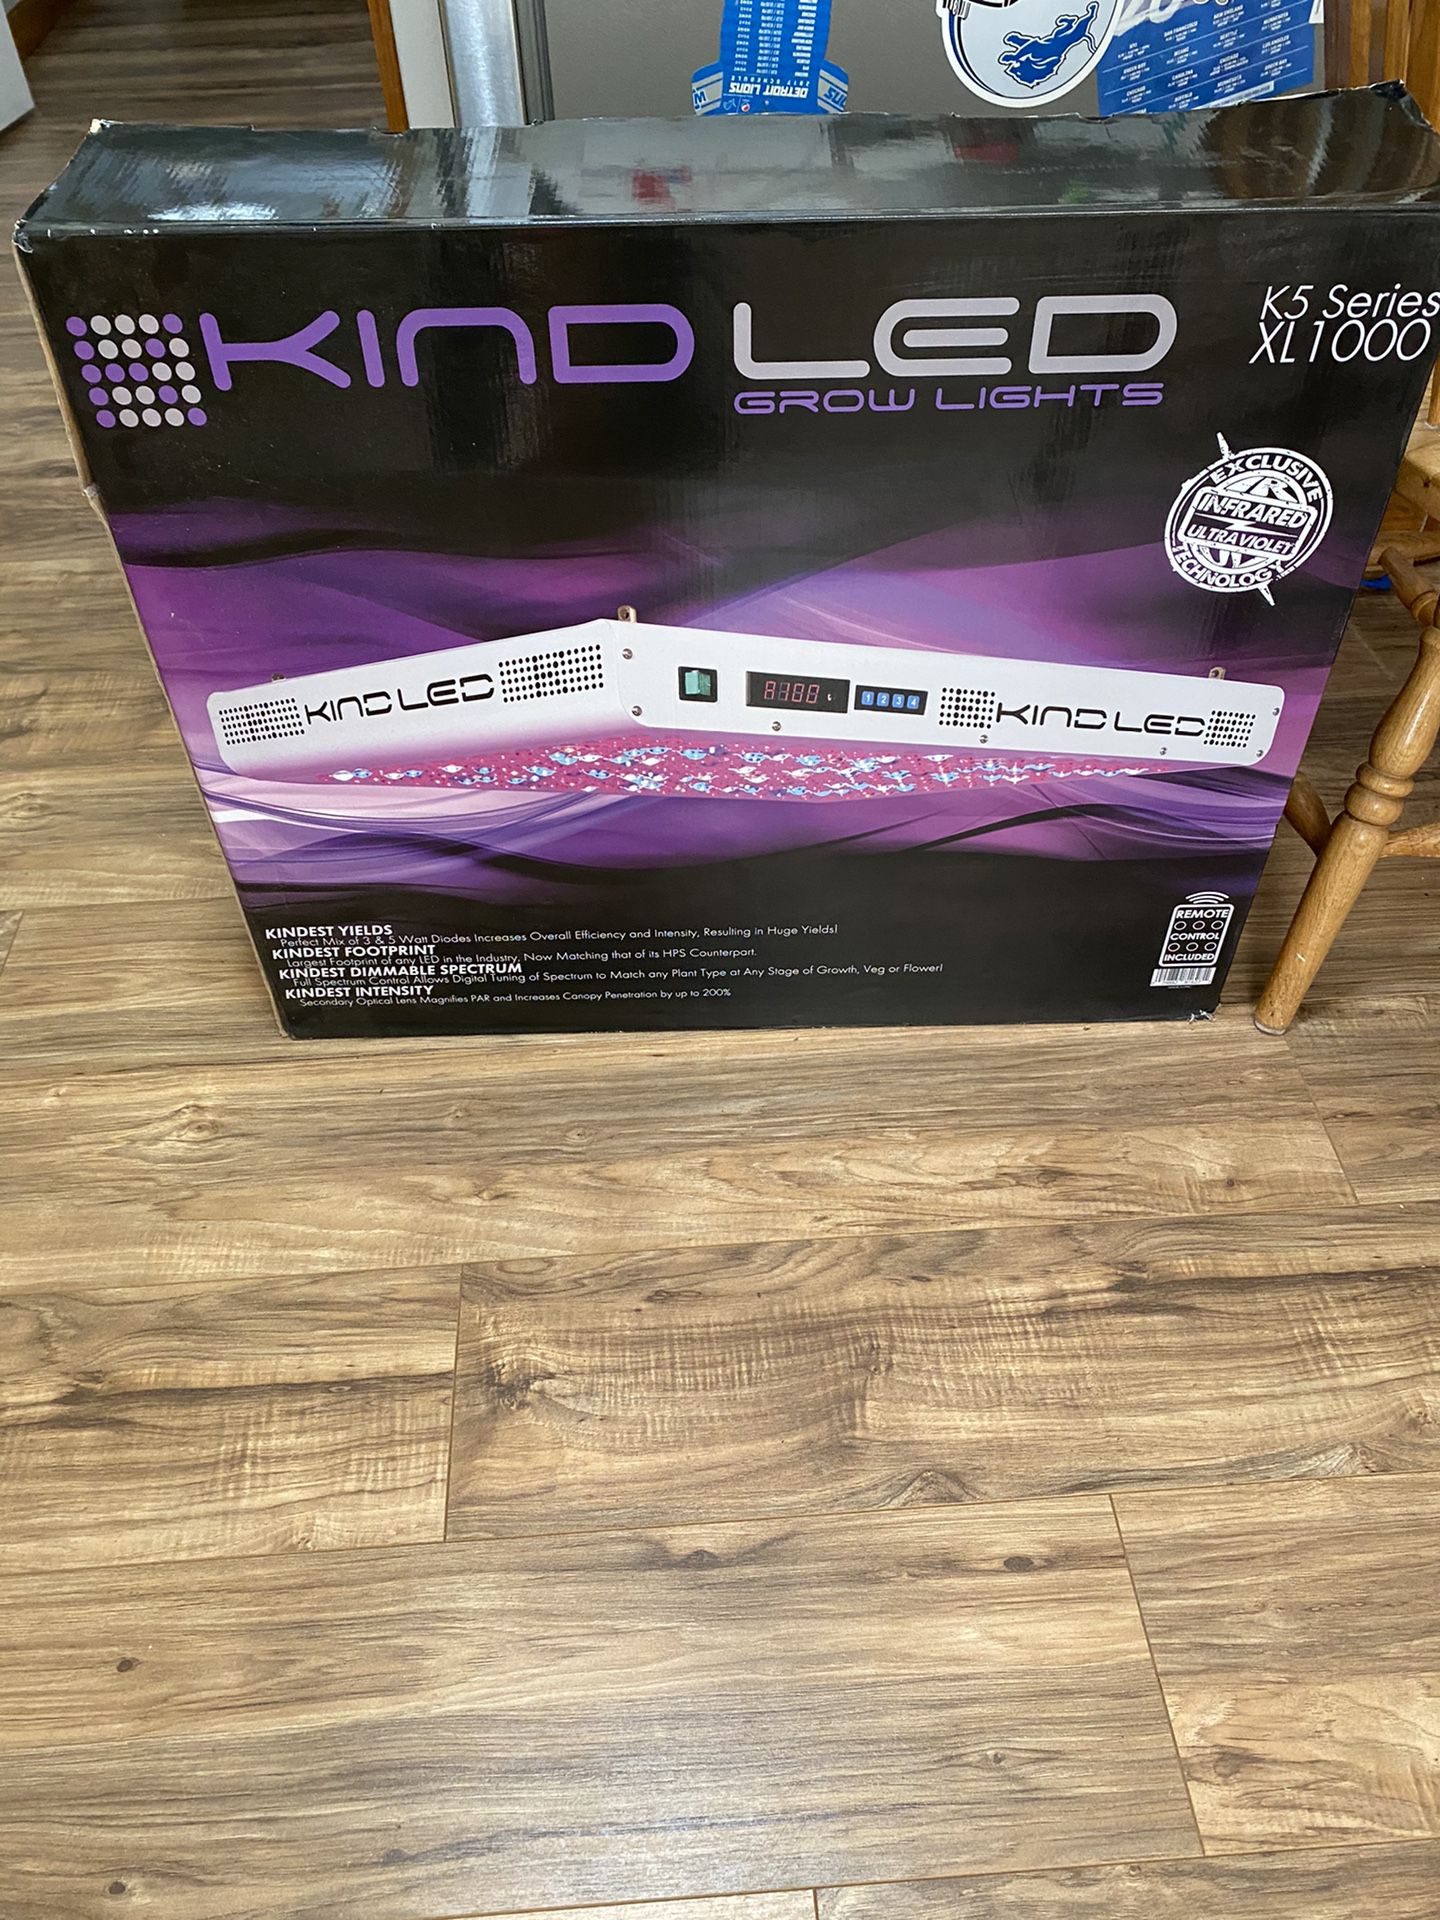 Kind LED XL1000 Grow Light